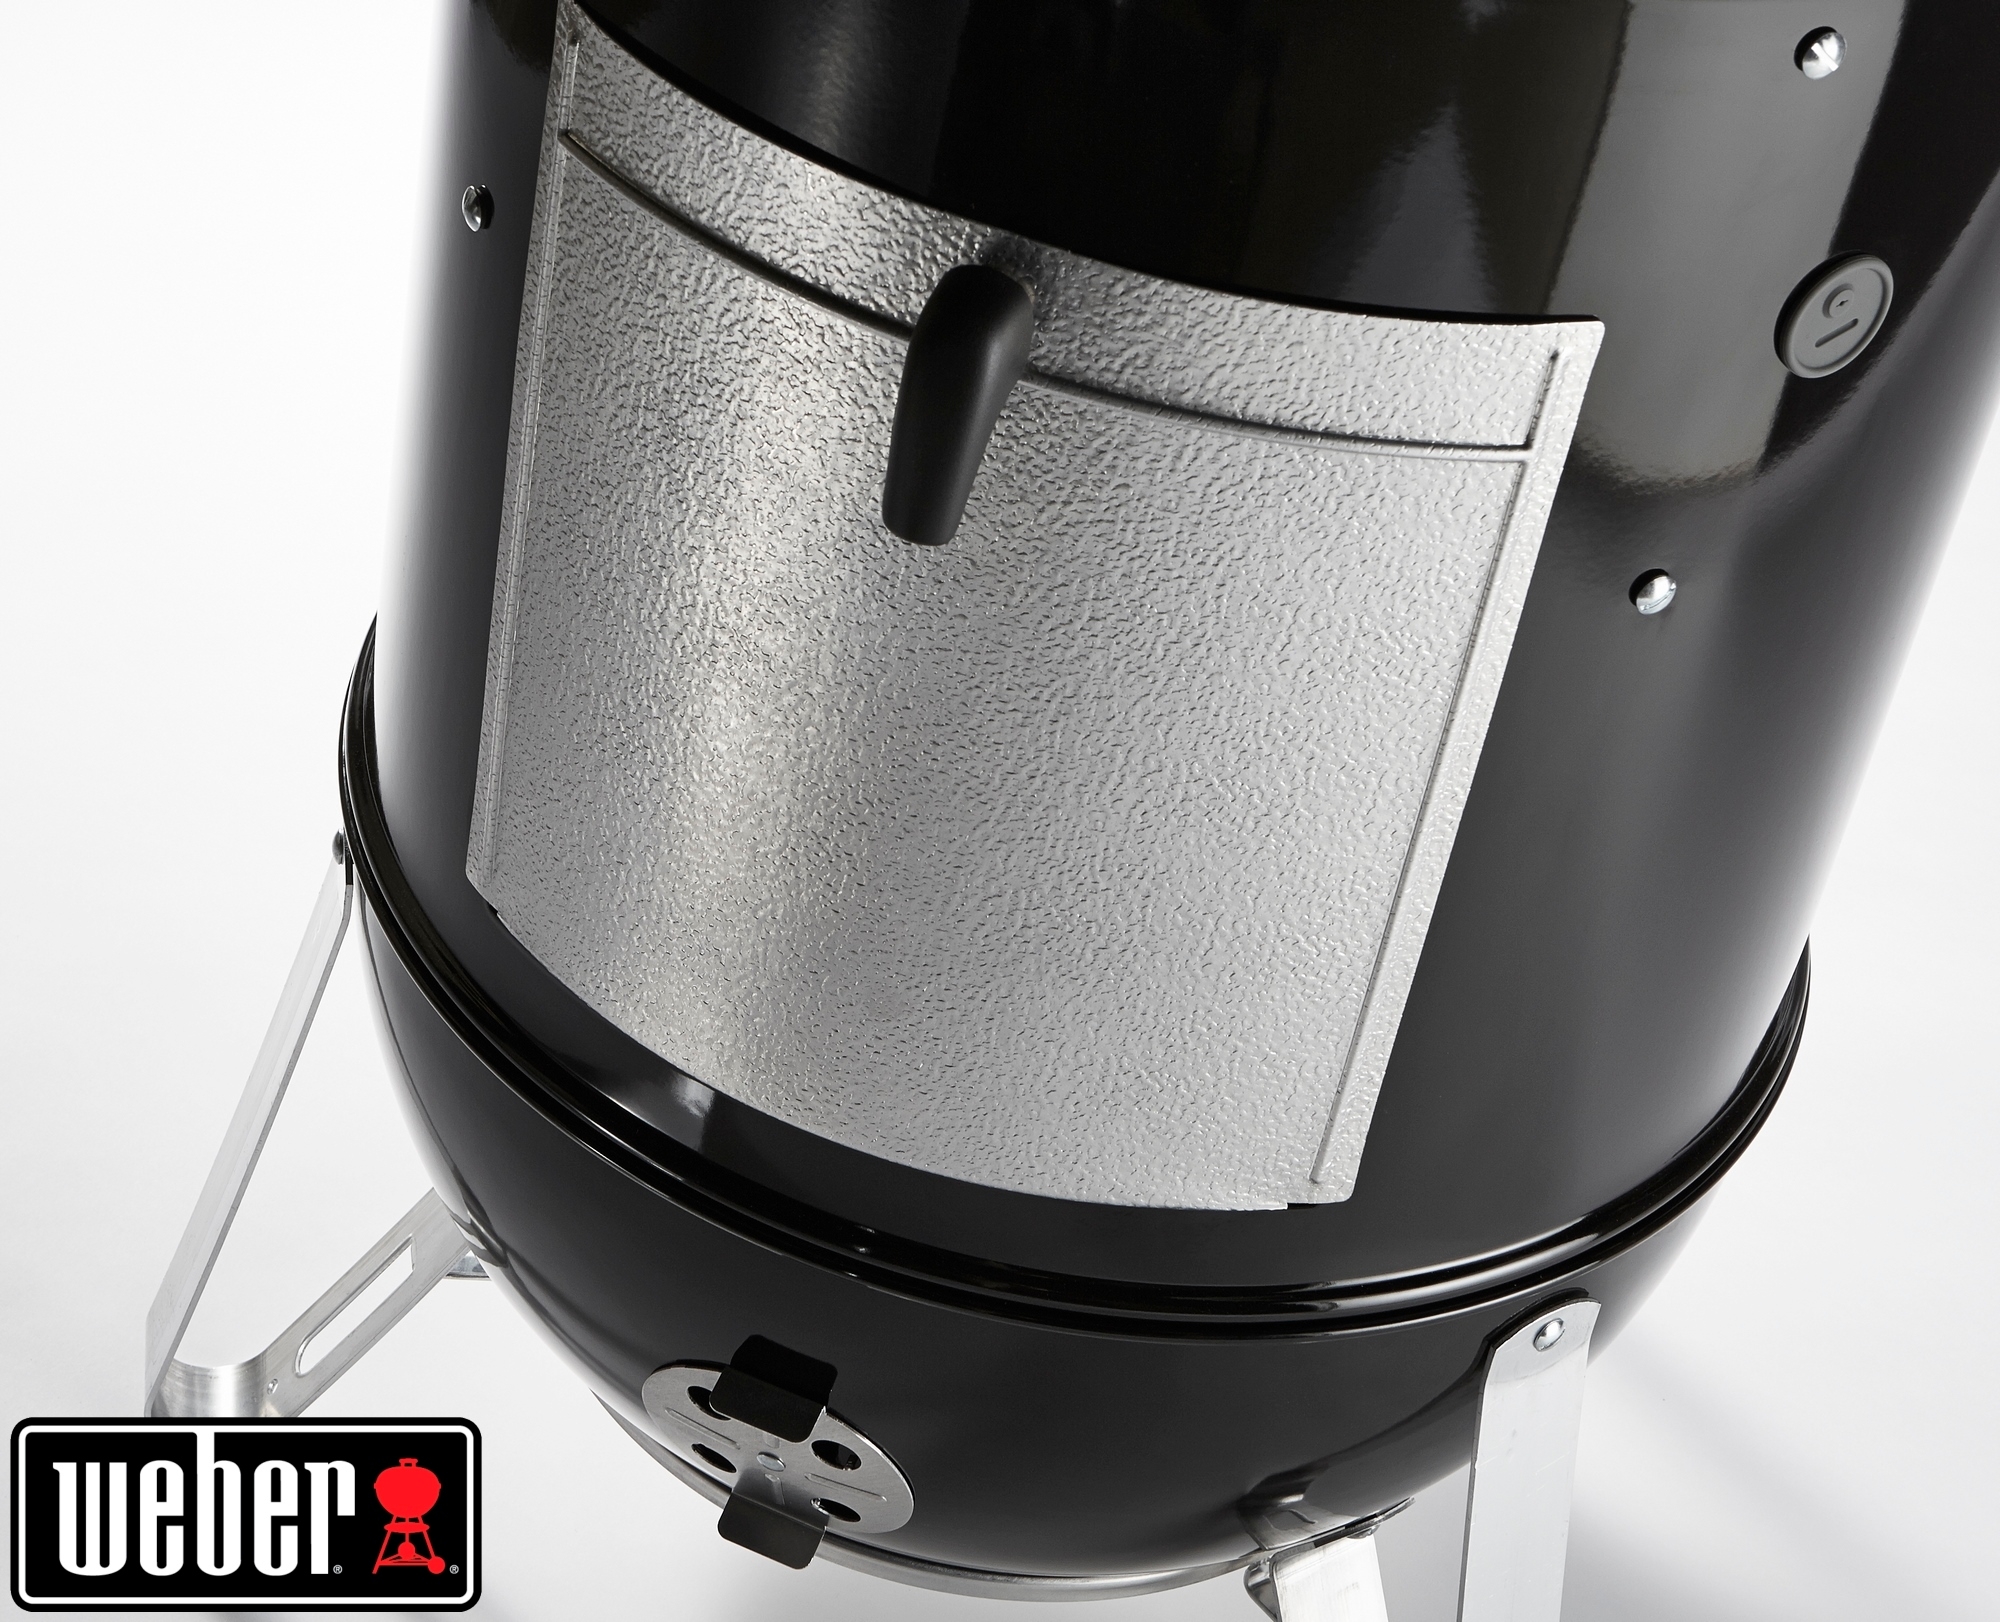 Weber® Smokey Mountain Cooker, 57 cm, Black